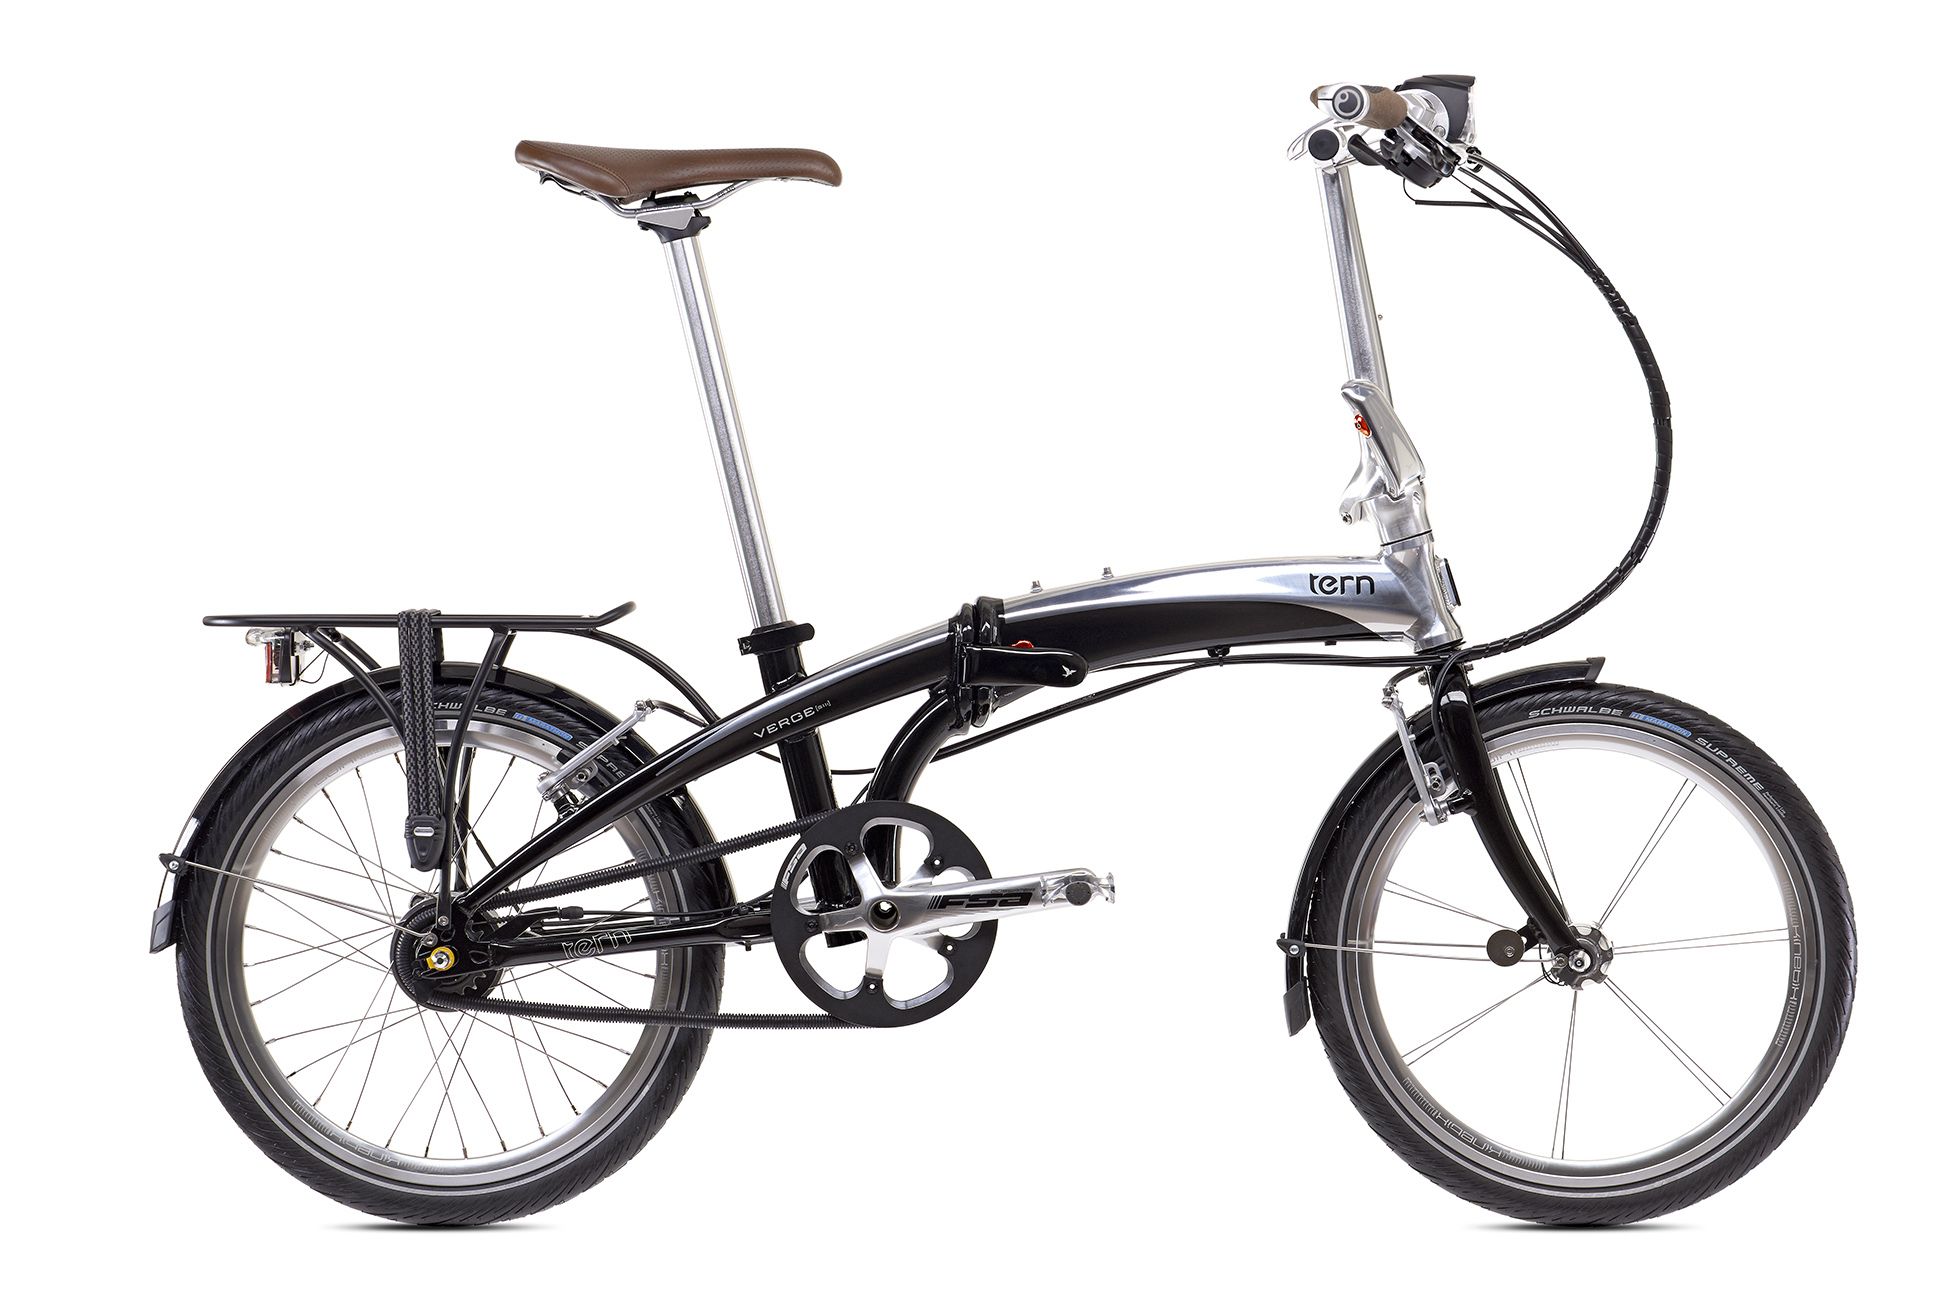  Отзывы о Складном велосипеде Tern Verge S11i 2016